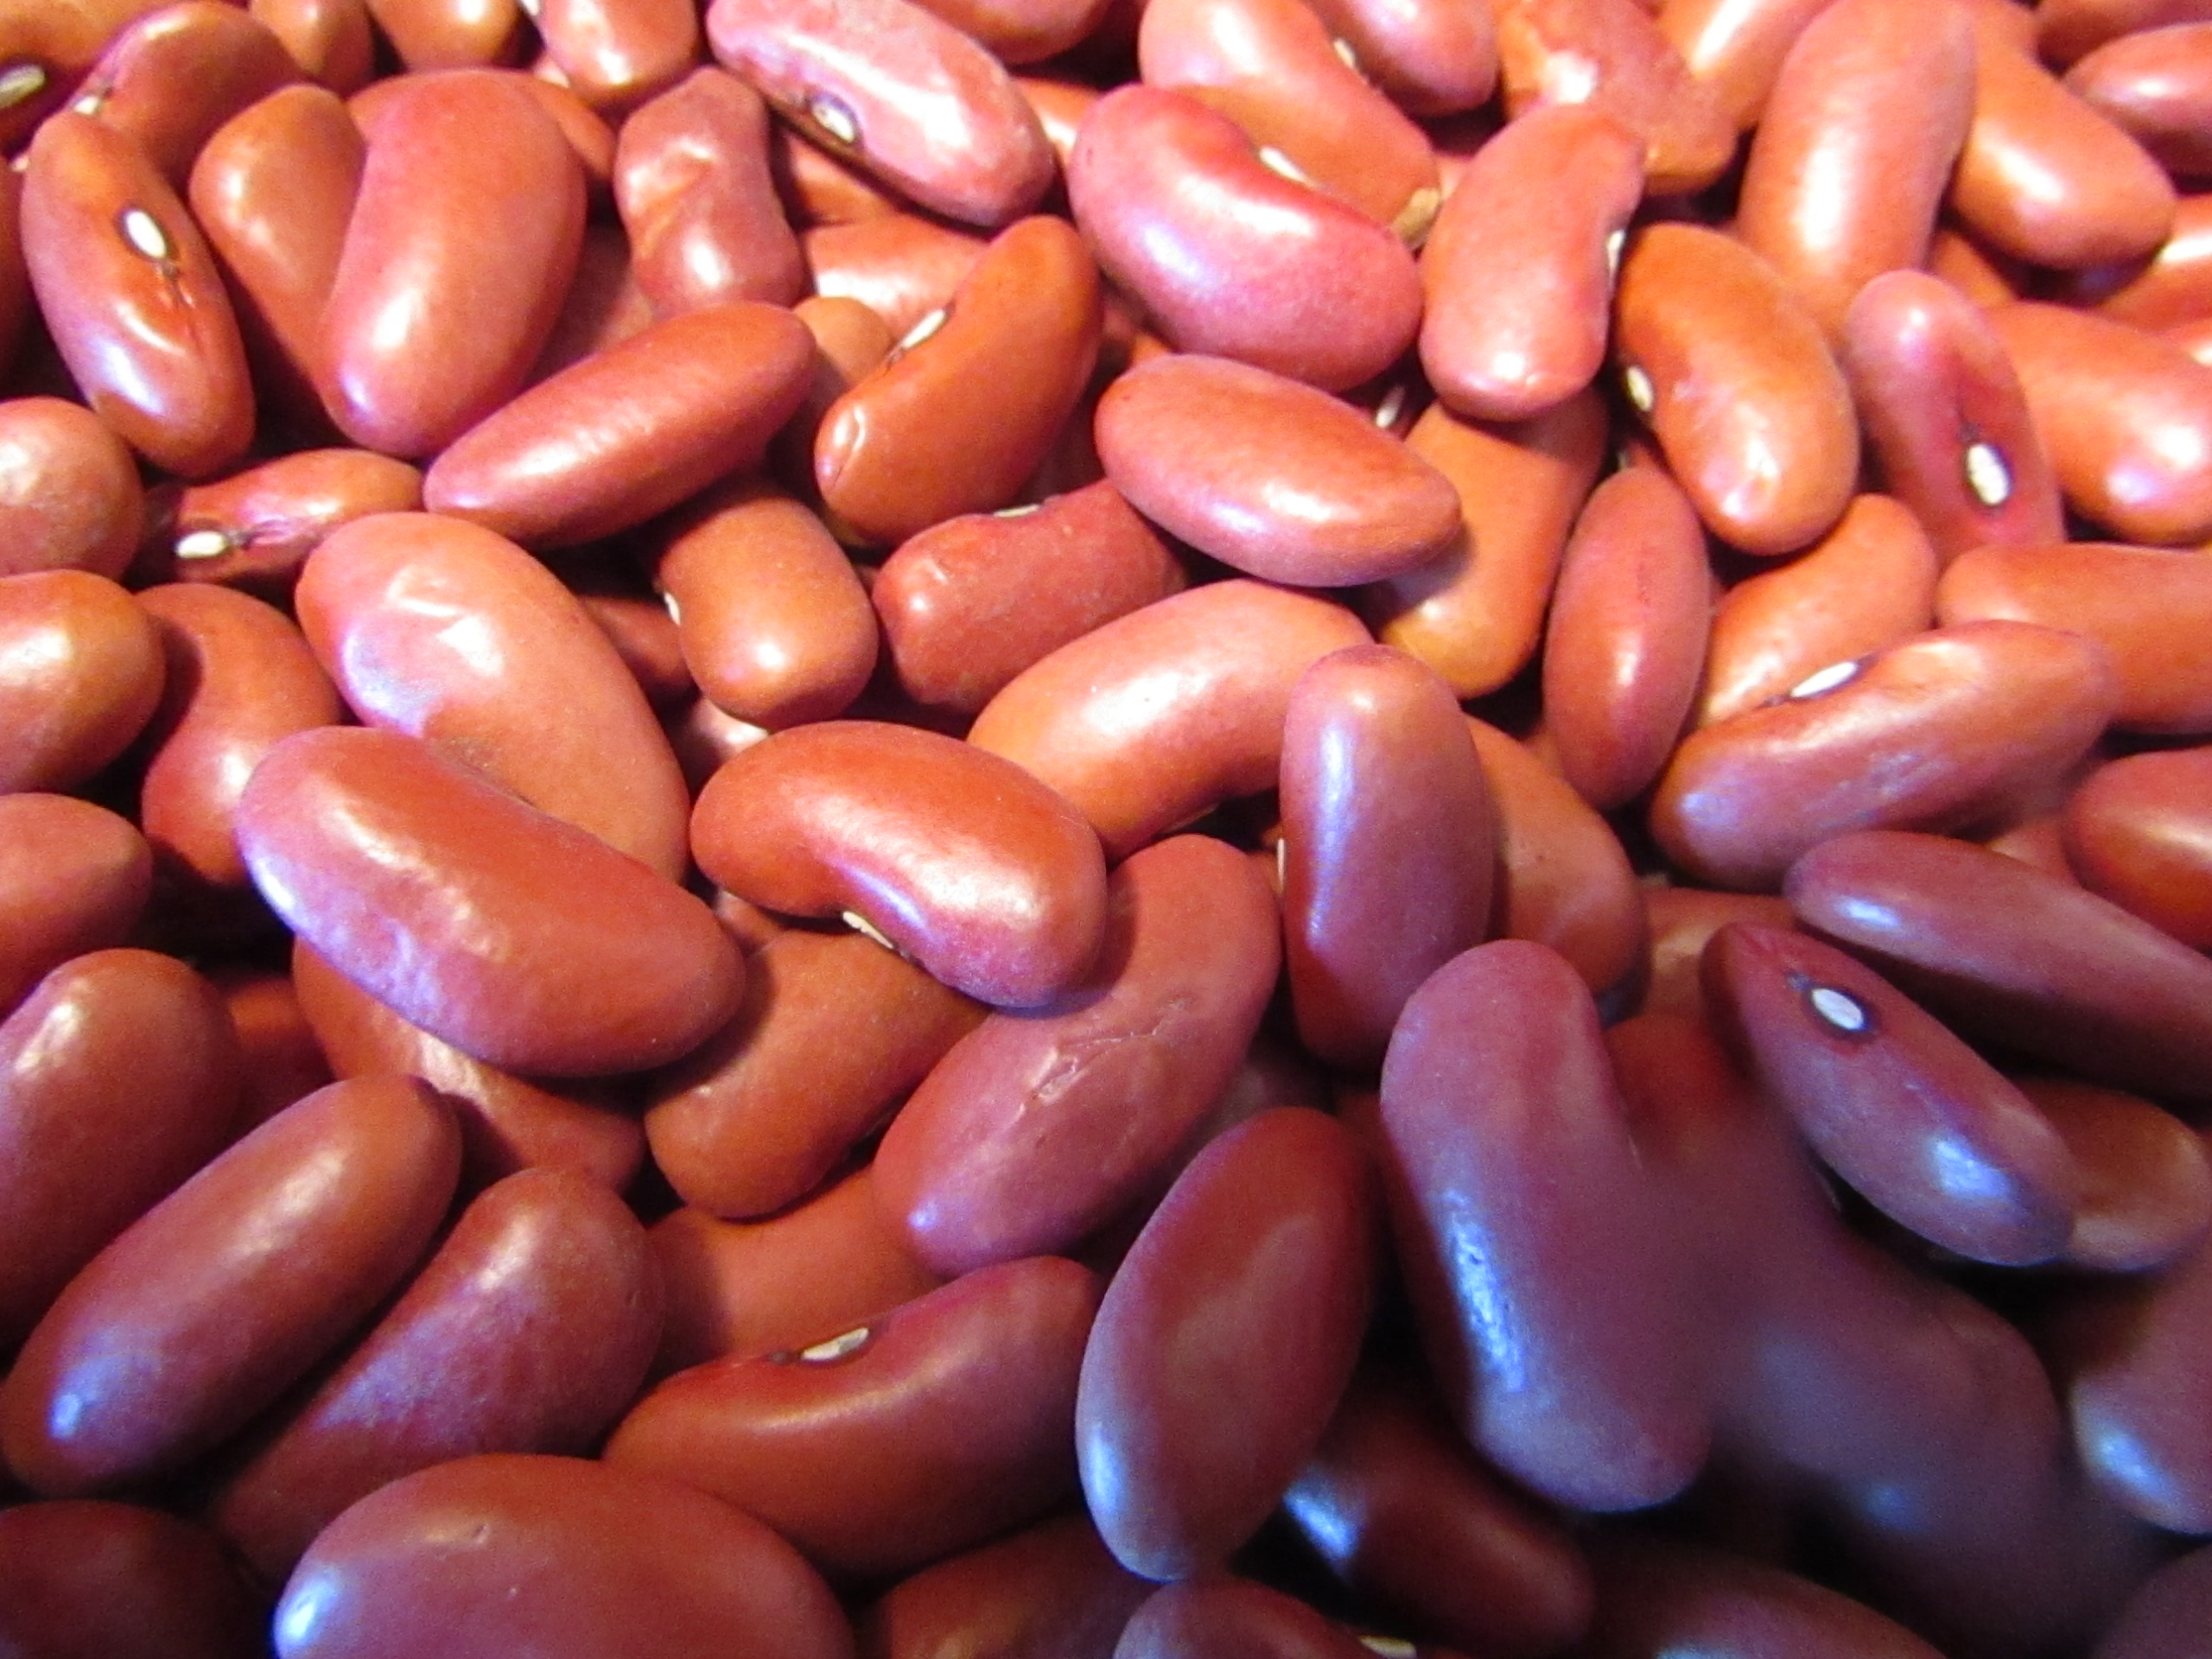 Dry Light Red Kidney Beans 32 oz Bag